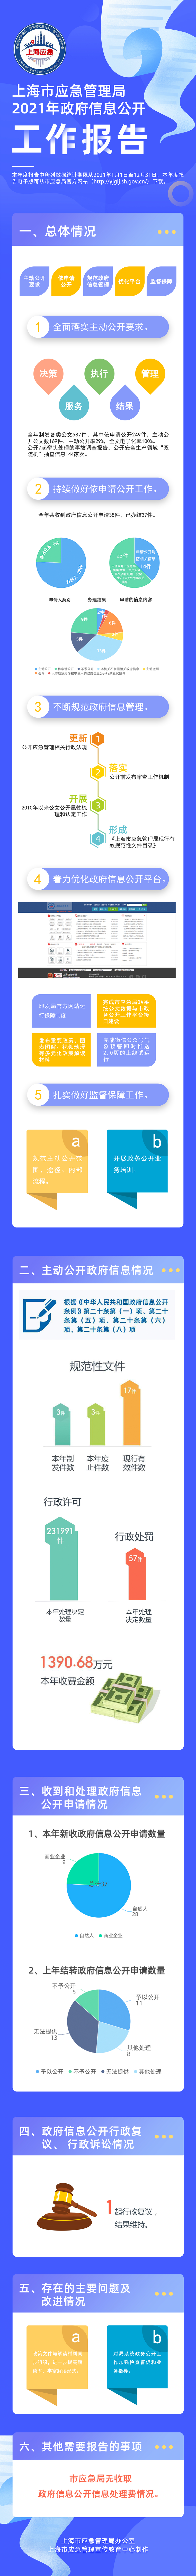 上海市应急管理局2021年政府信息公开工作报告解读.jpg